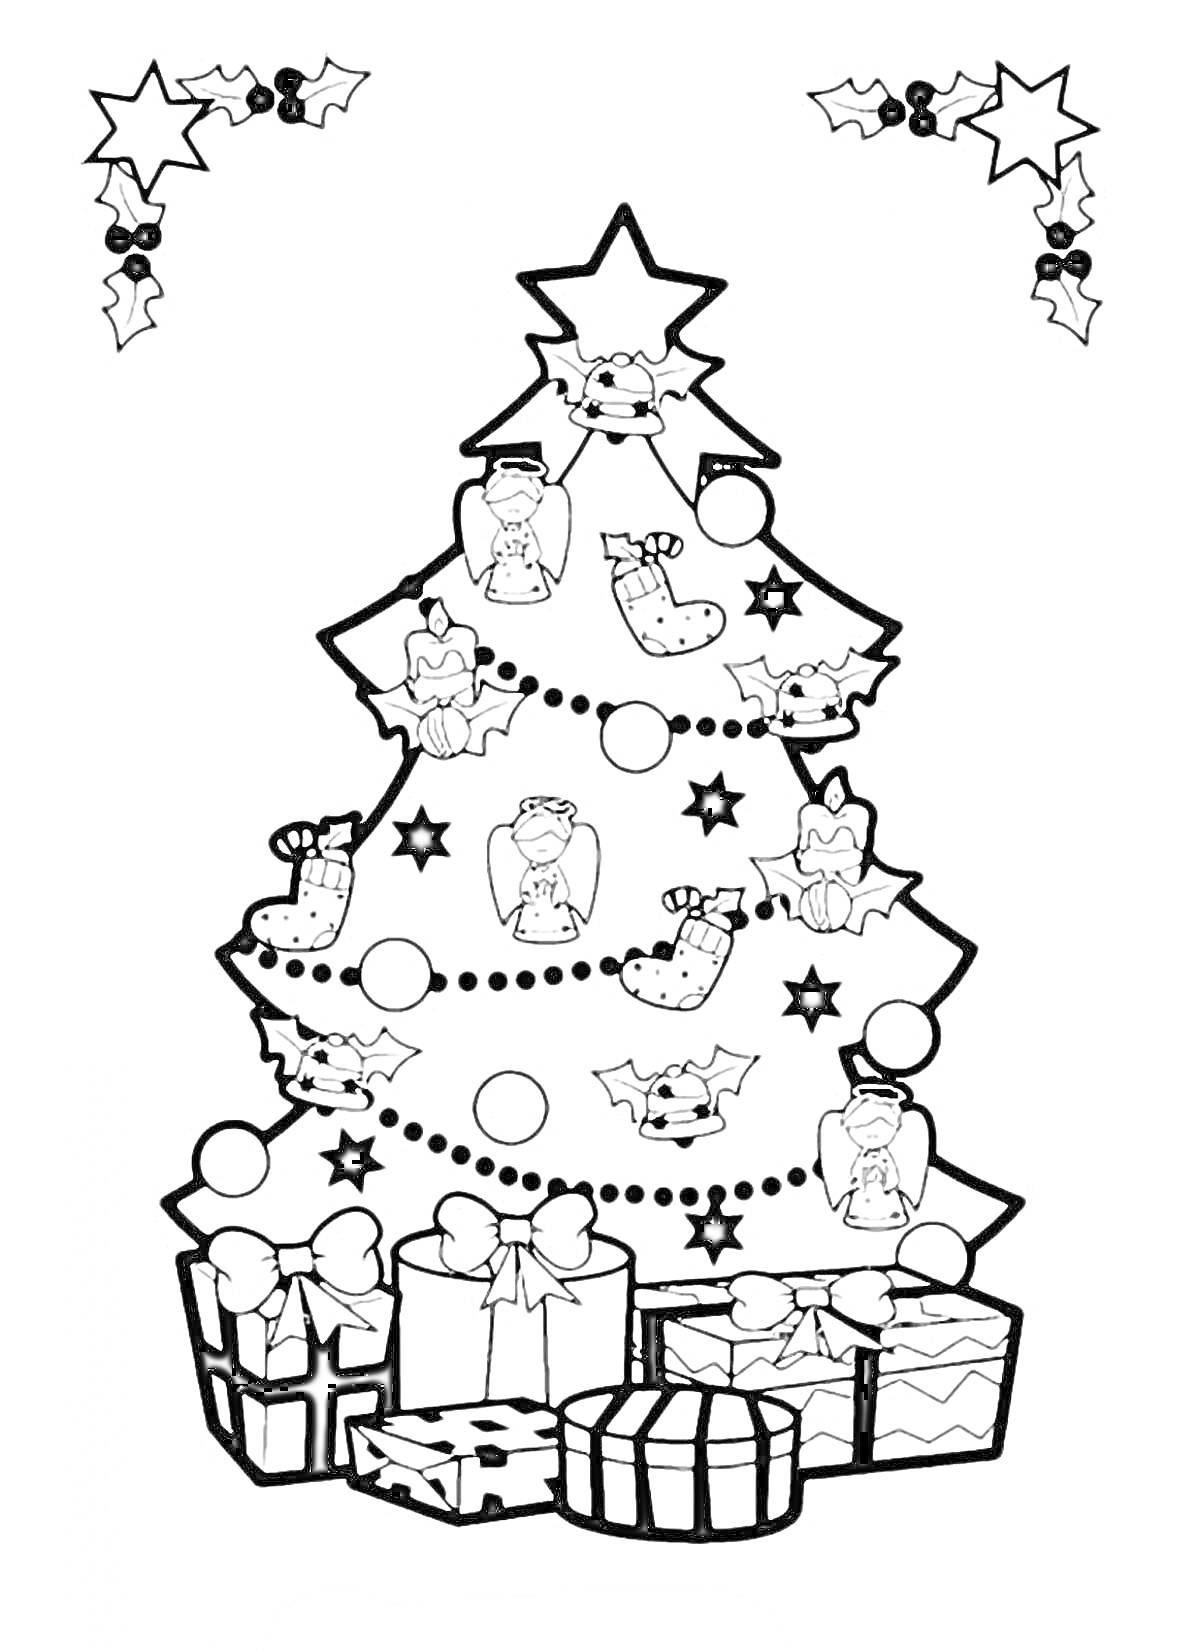 Новогодняя елка с игрушками, звездами, украшениями и подарками